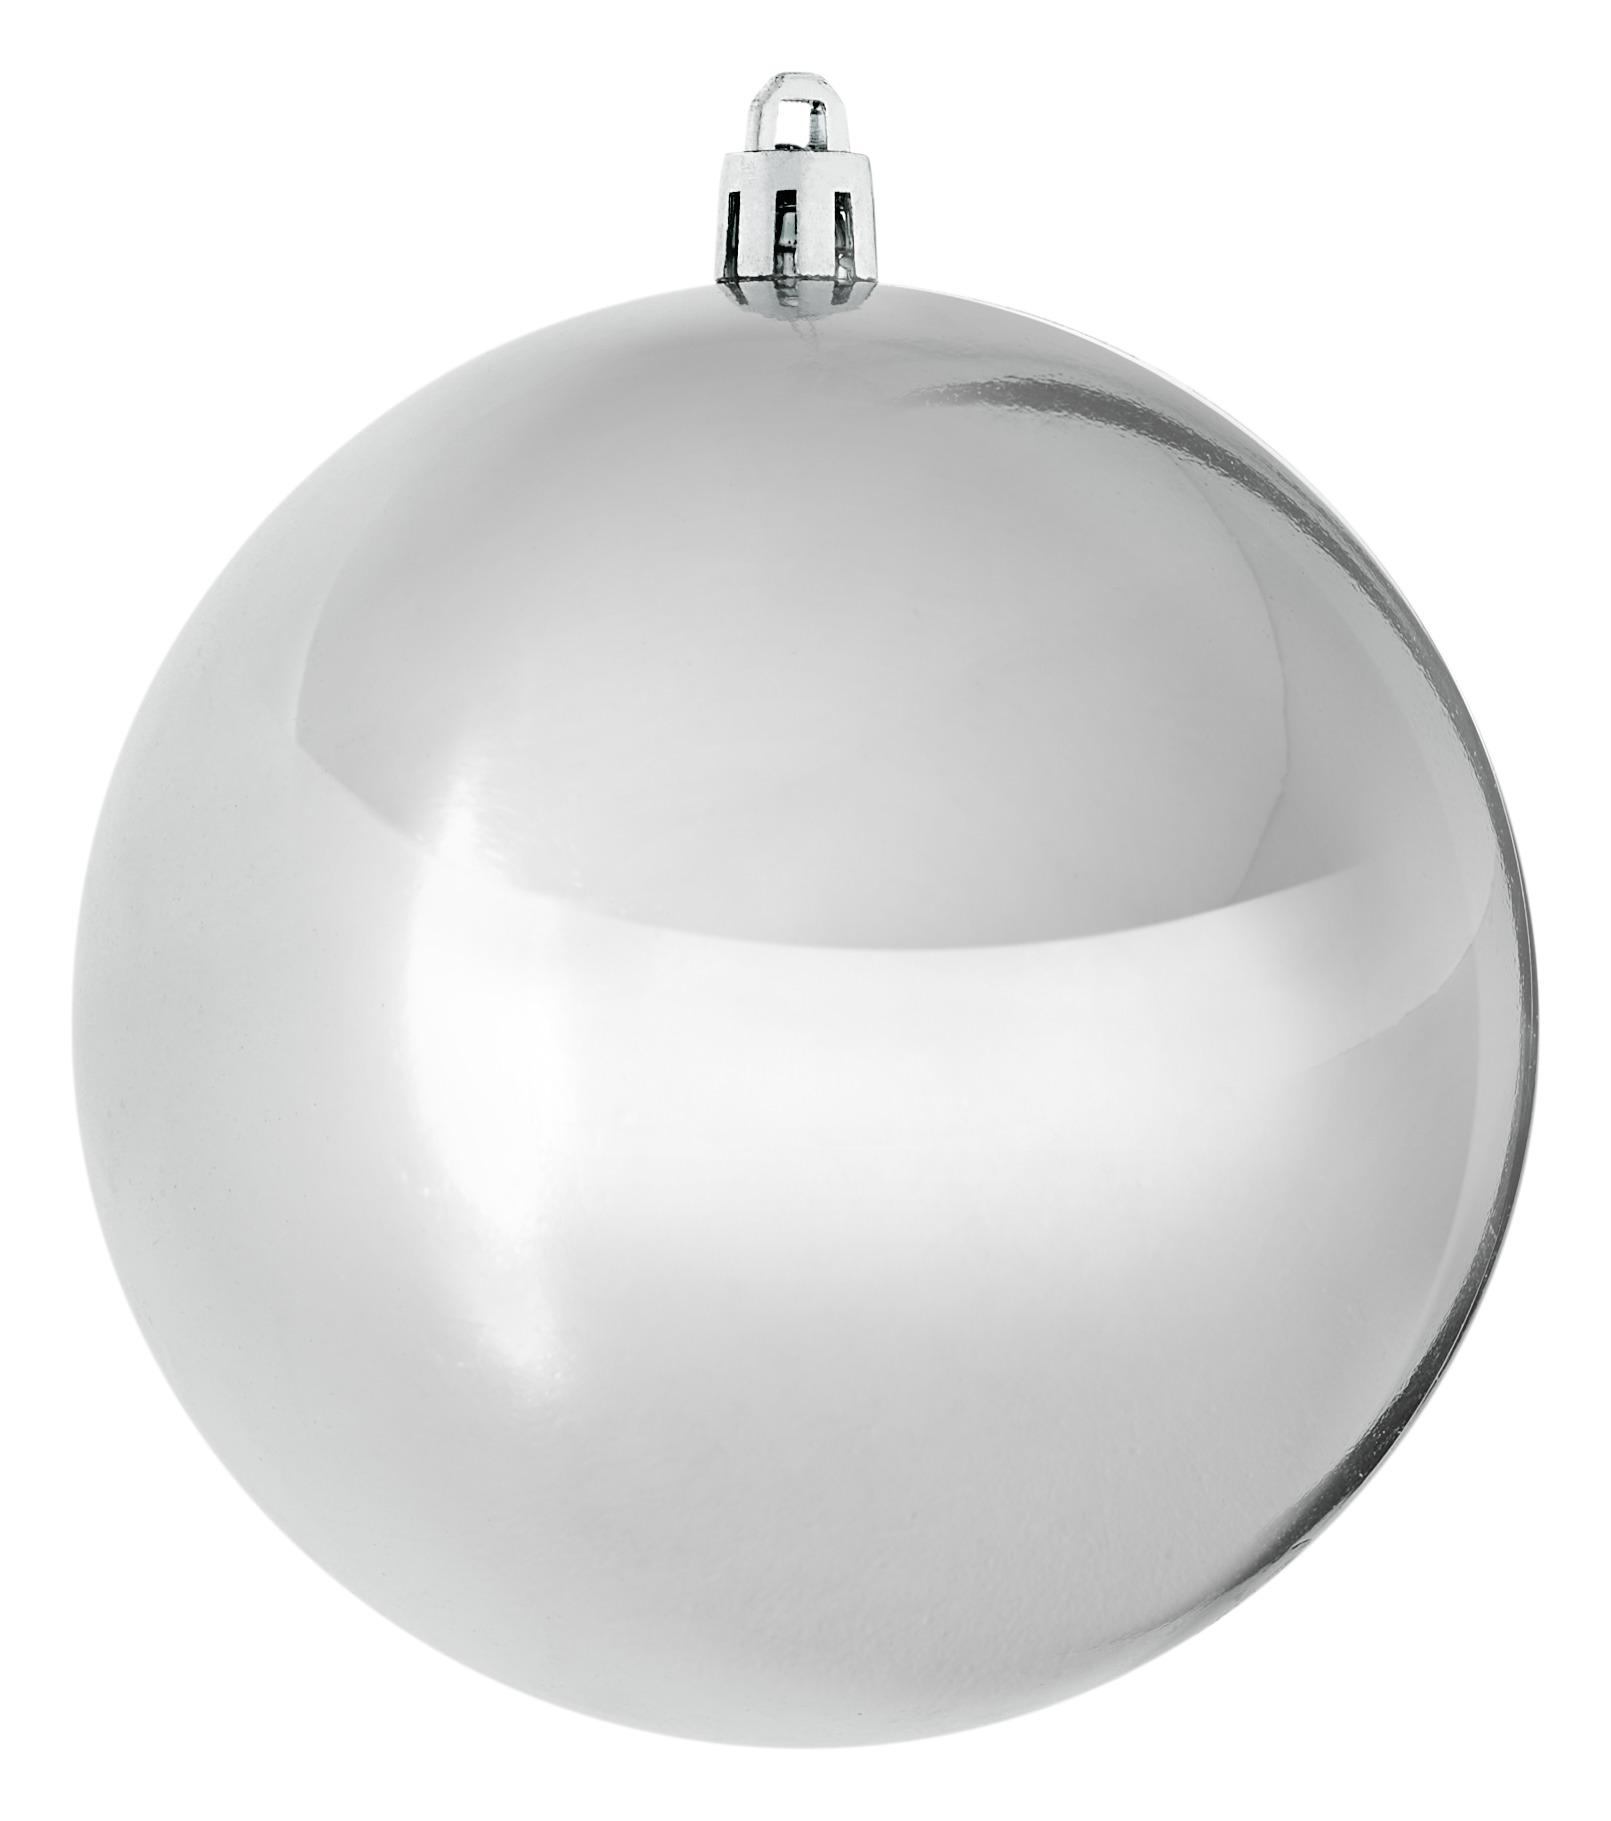 Baňka Na Vánoční Stromeček Big, Ø: 10cm - barvy stříbra, plast (10cm) - Modern Living